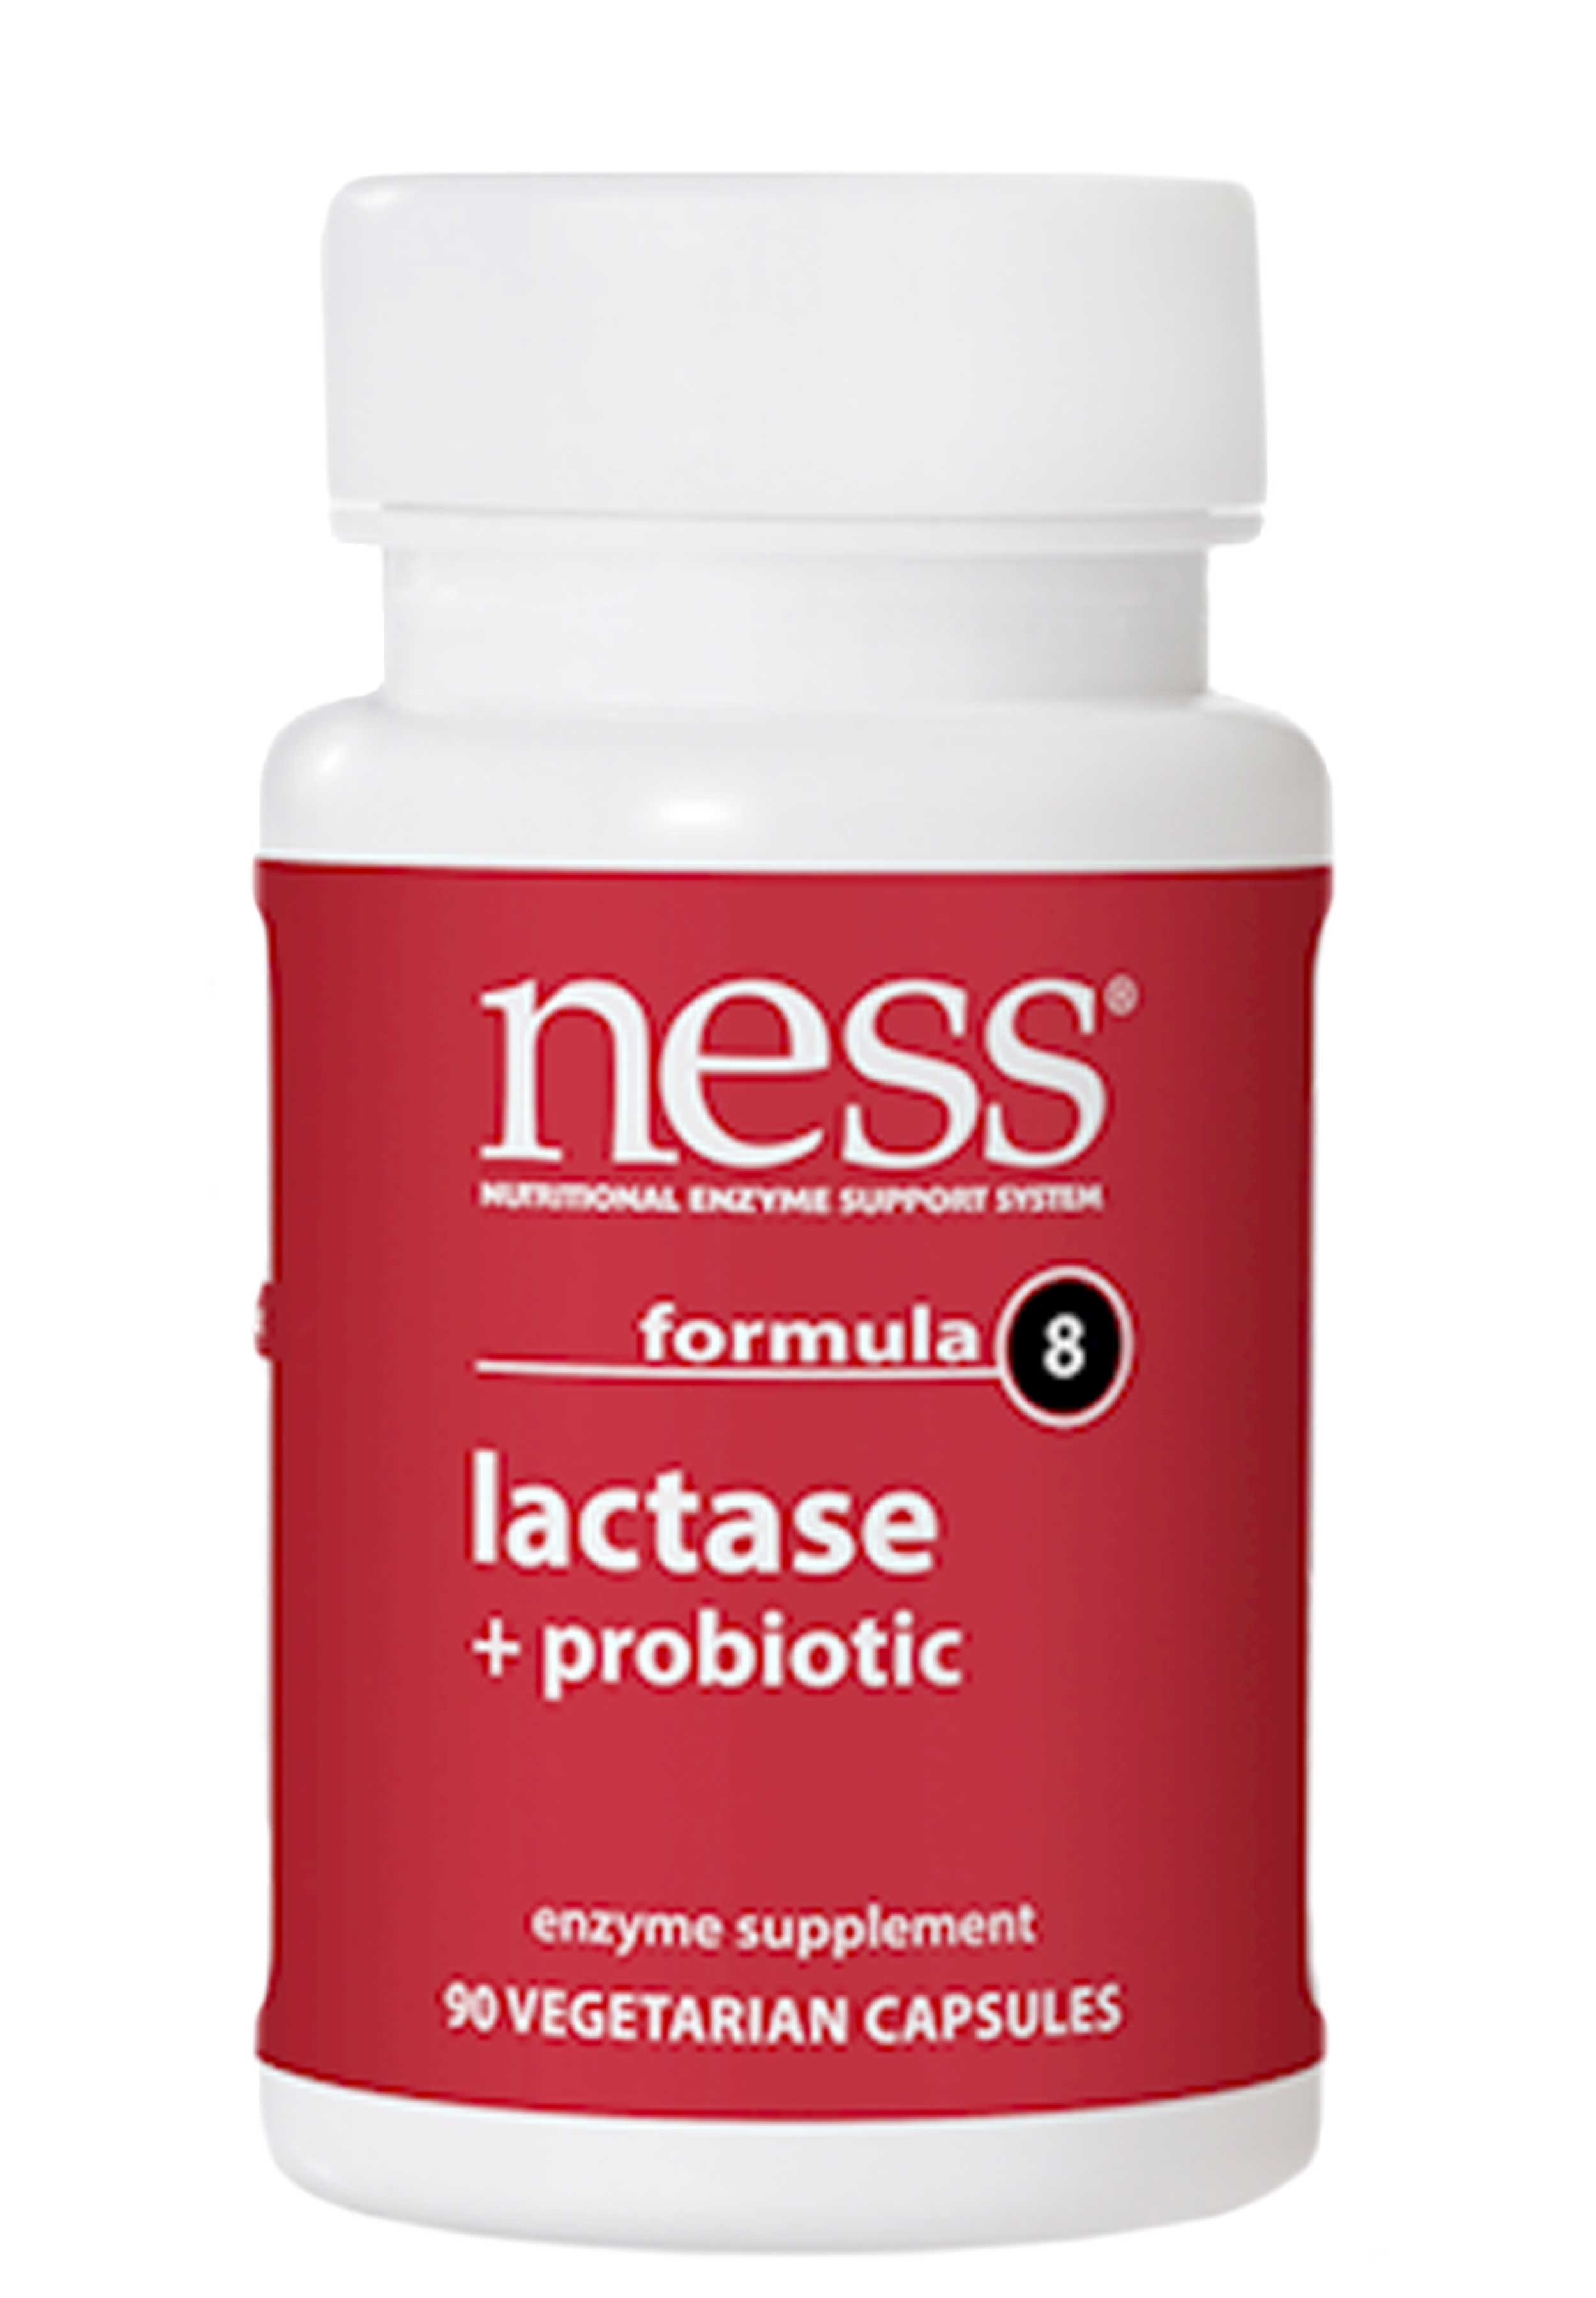 Ness Enzymes Lactase + Probiotic Formula 8